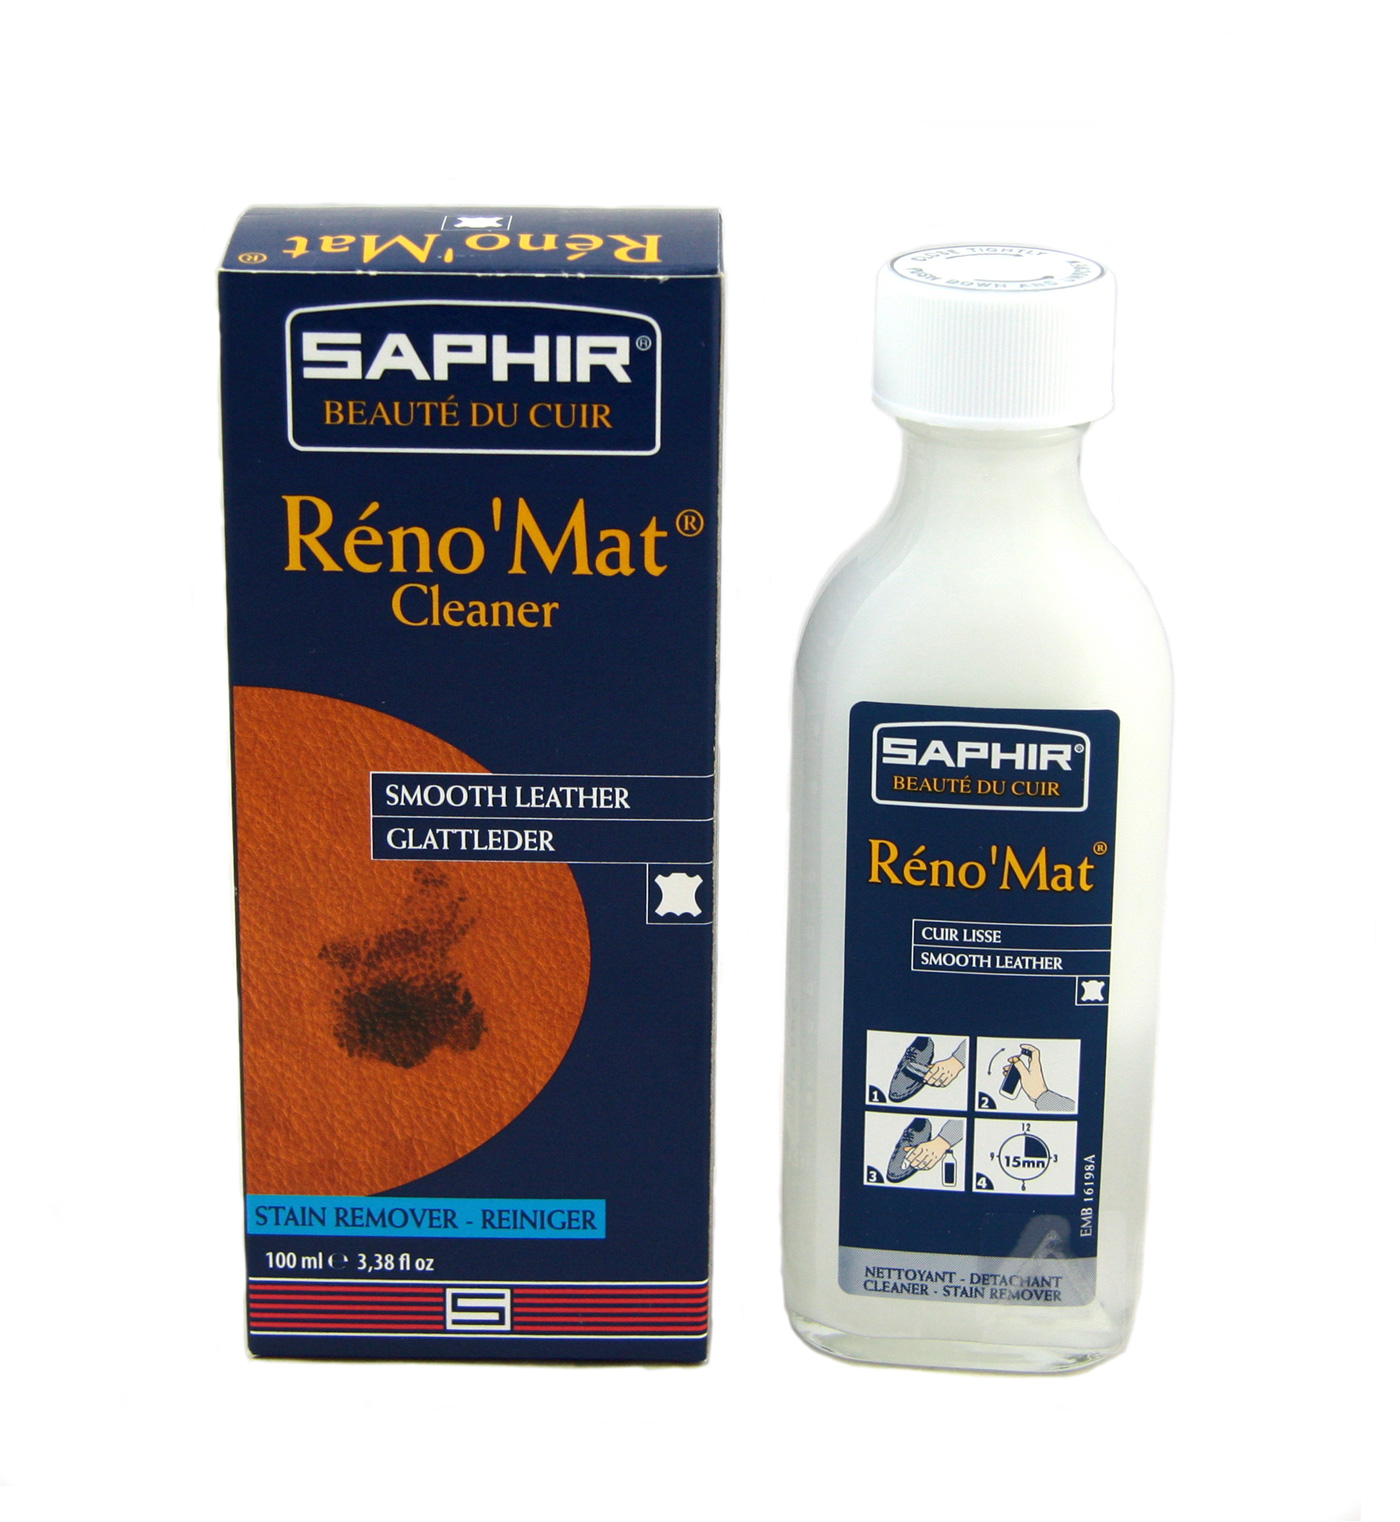 Reno mat. Saphir Reno mat. Saphir очиститель Reno’mat. Реномат от сапфир. Saphir Reno mat состав.